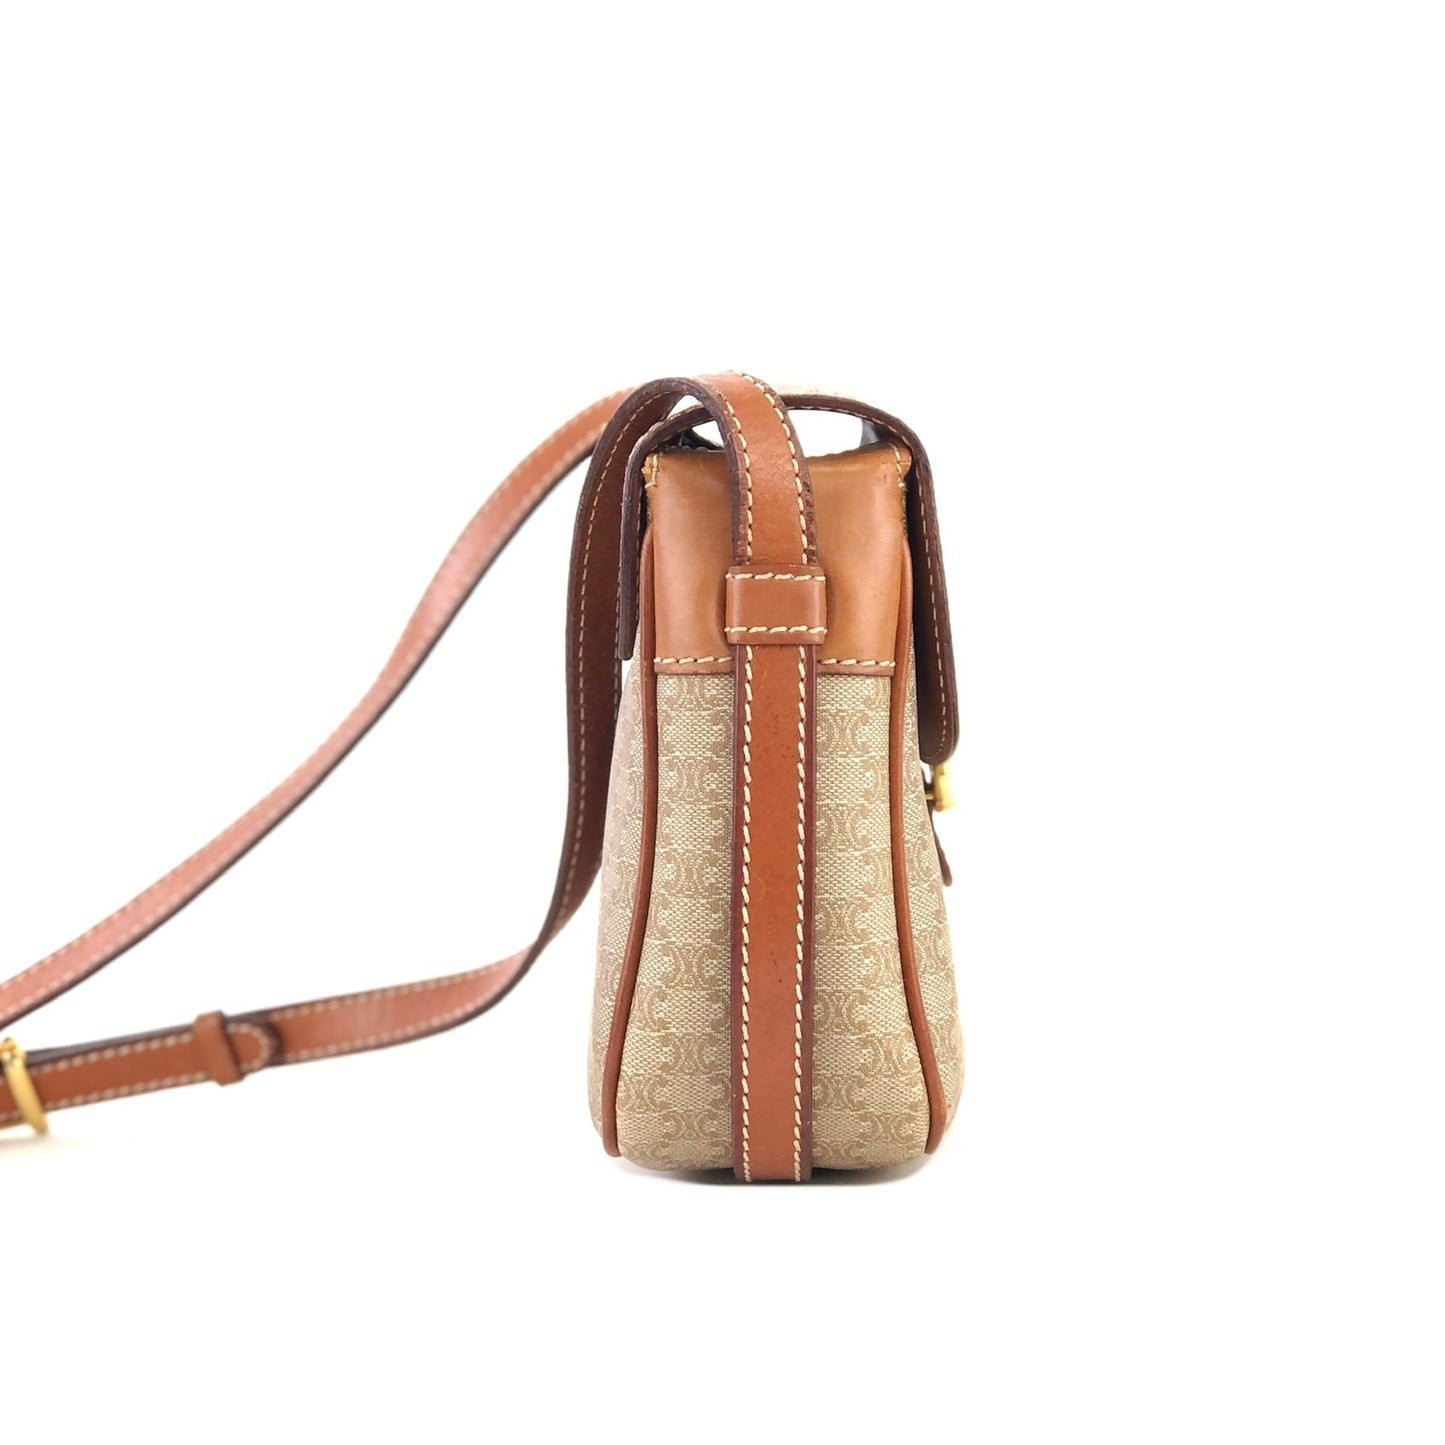 CELINE Macadam Horsebit PVC Leather Pochette Mini Bag Shoulder Bag Beige vintage Old Celine rycwjg